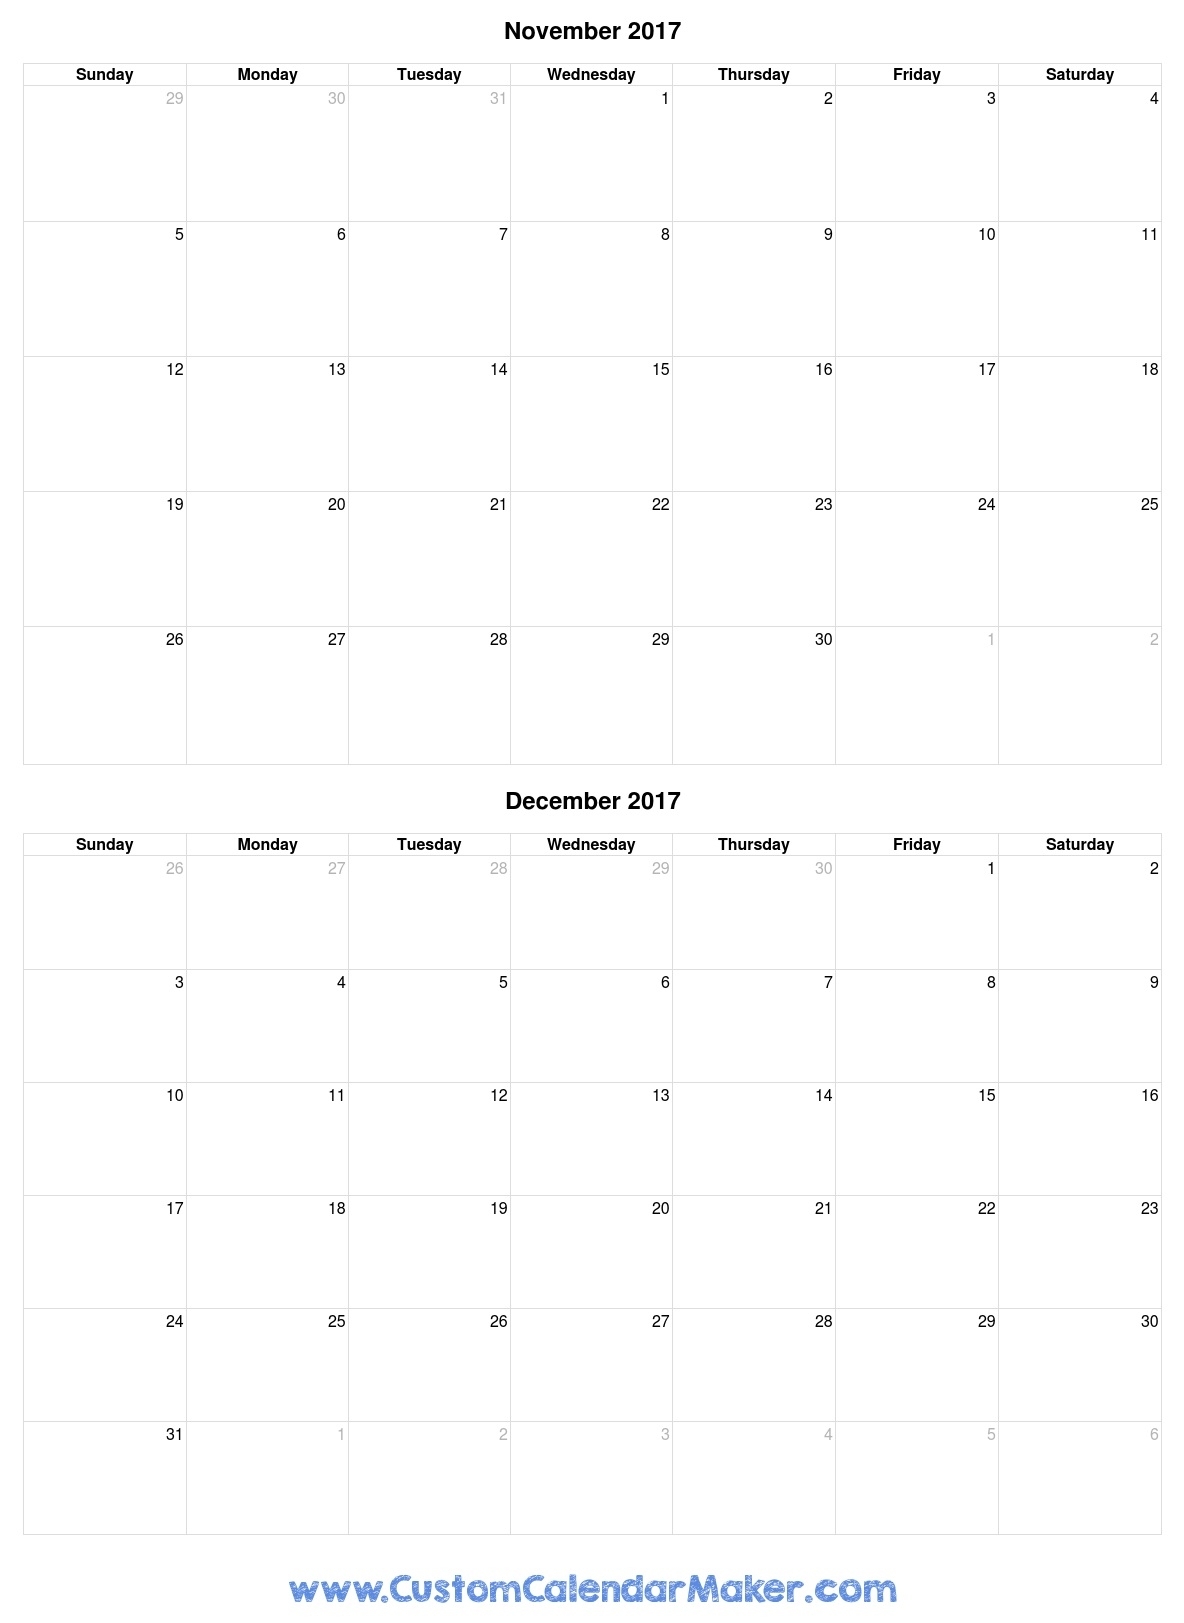 November And December 2017 Printable Calendar inside Nov Dec 2017 Calendar Printable